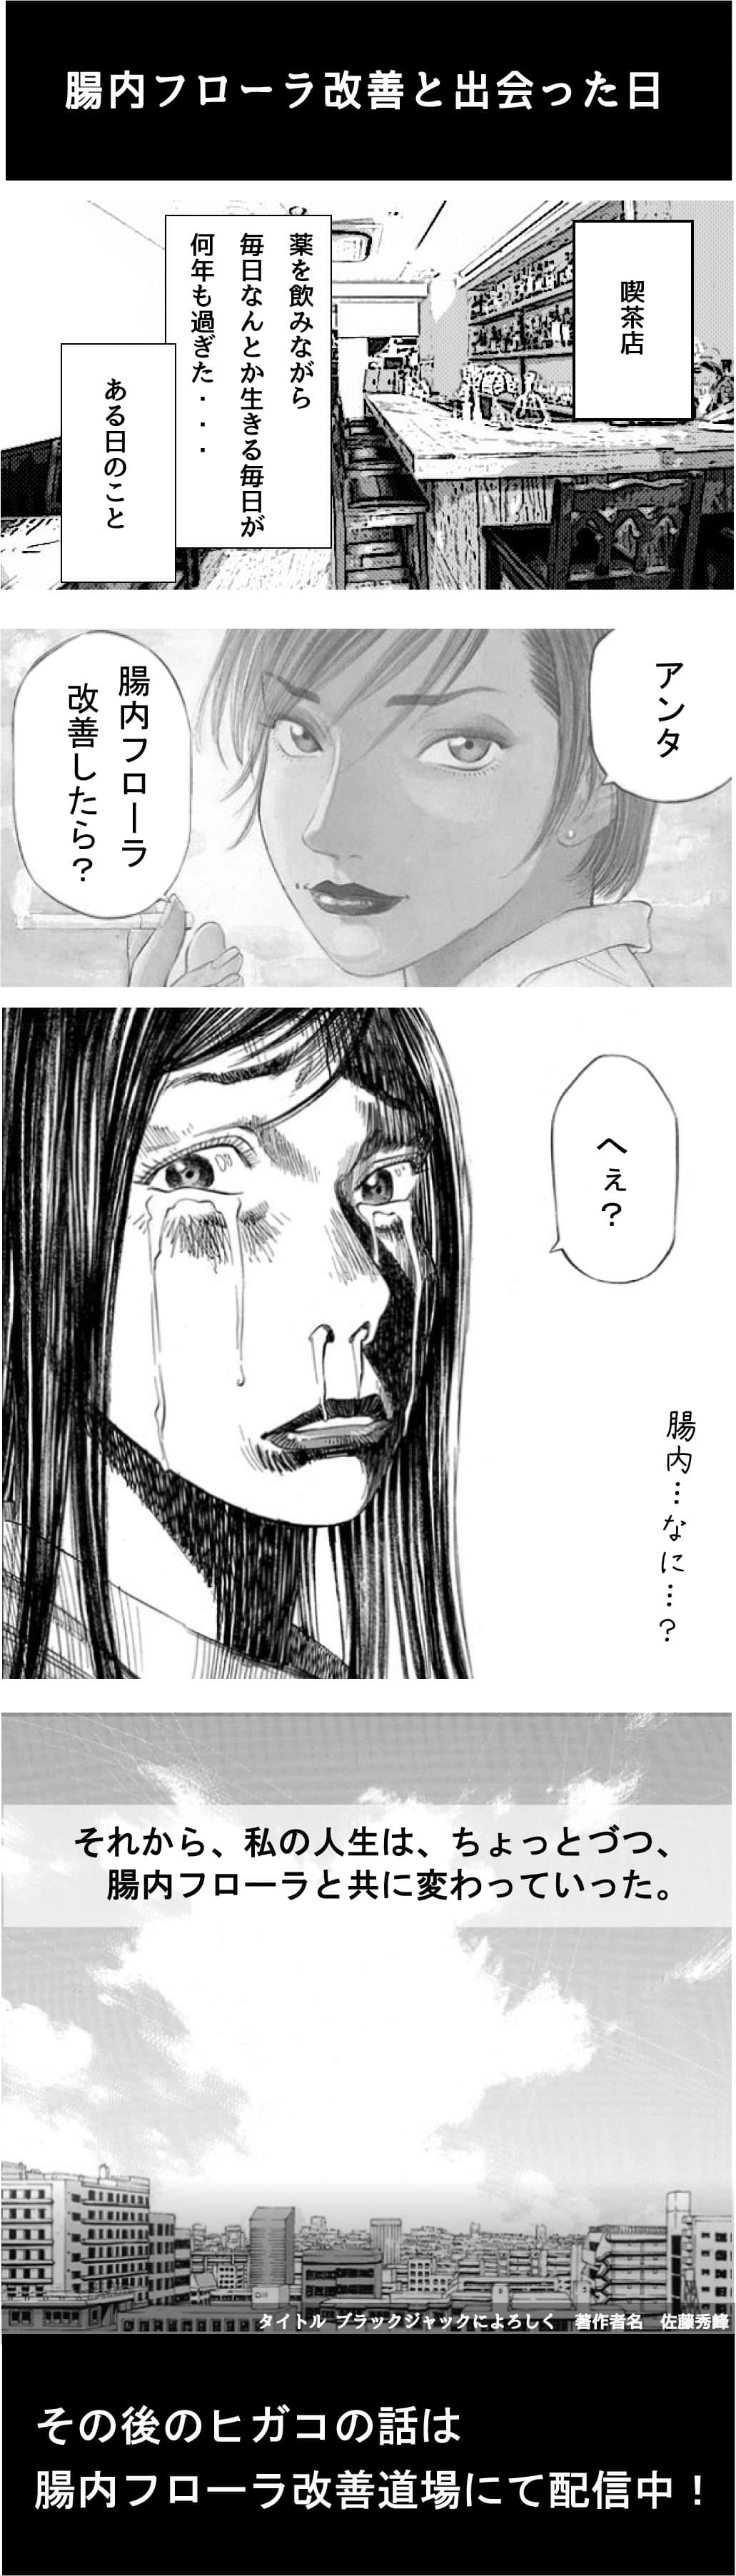 manga6